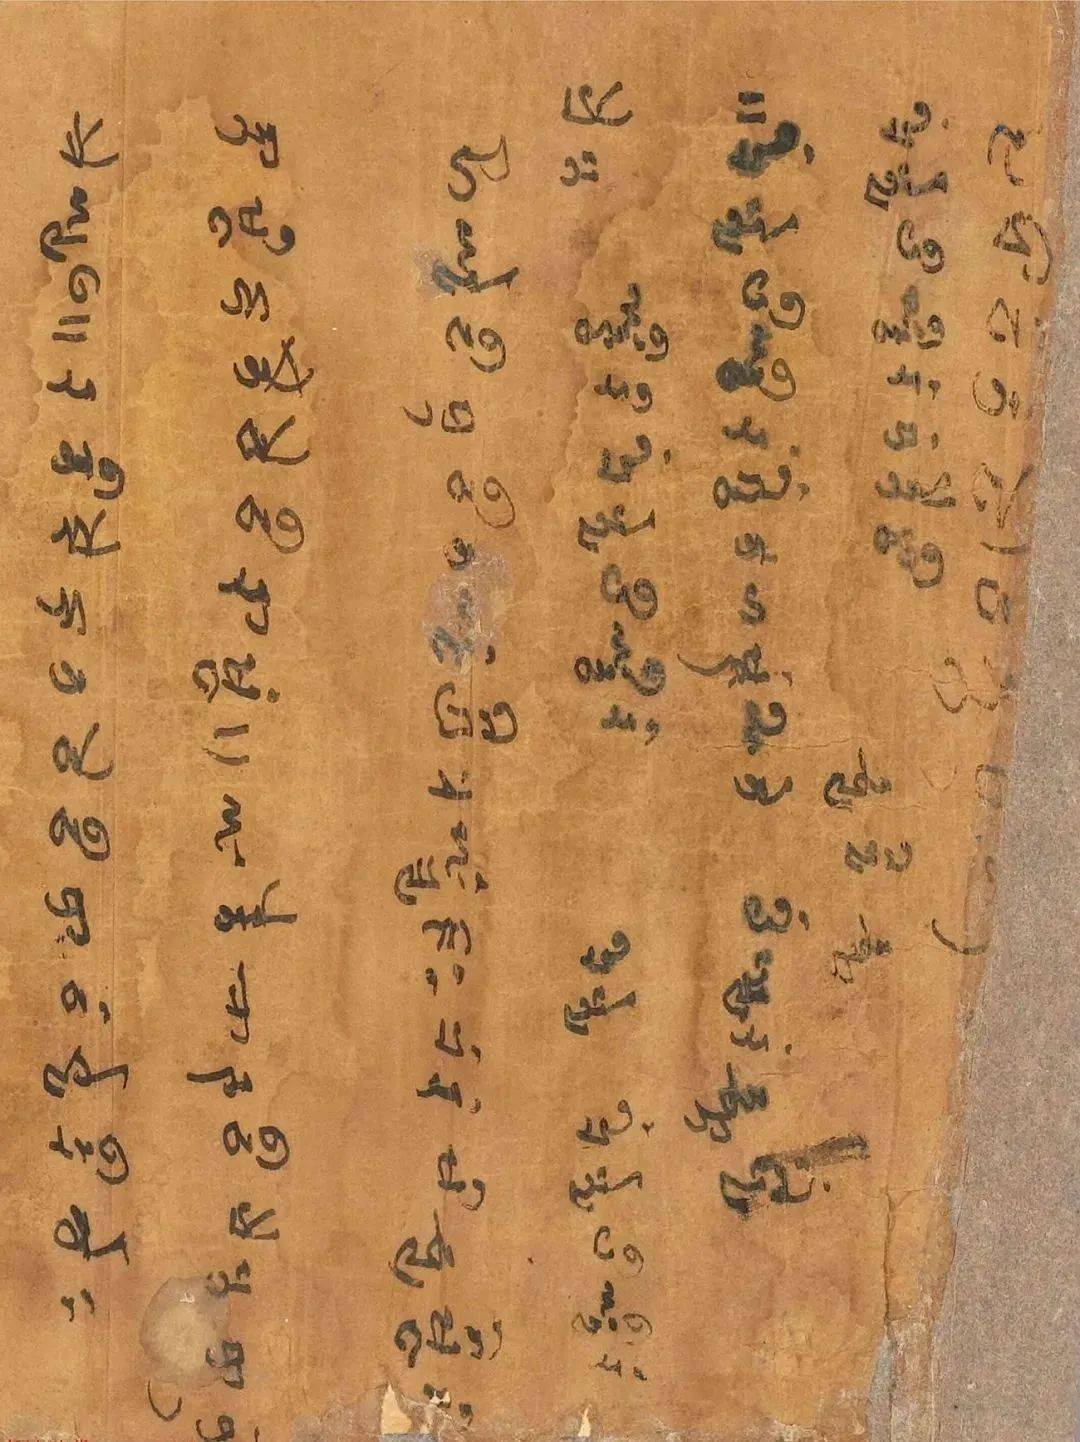 吐火罗文字母表图片